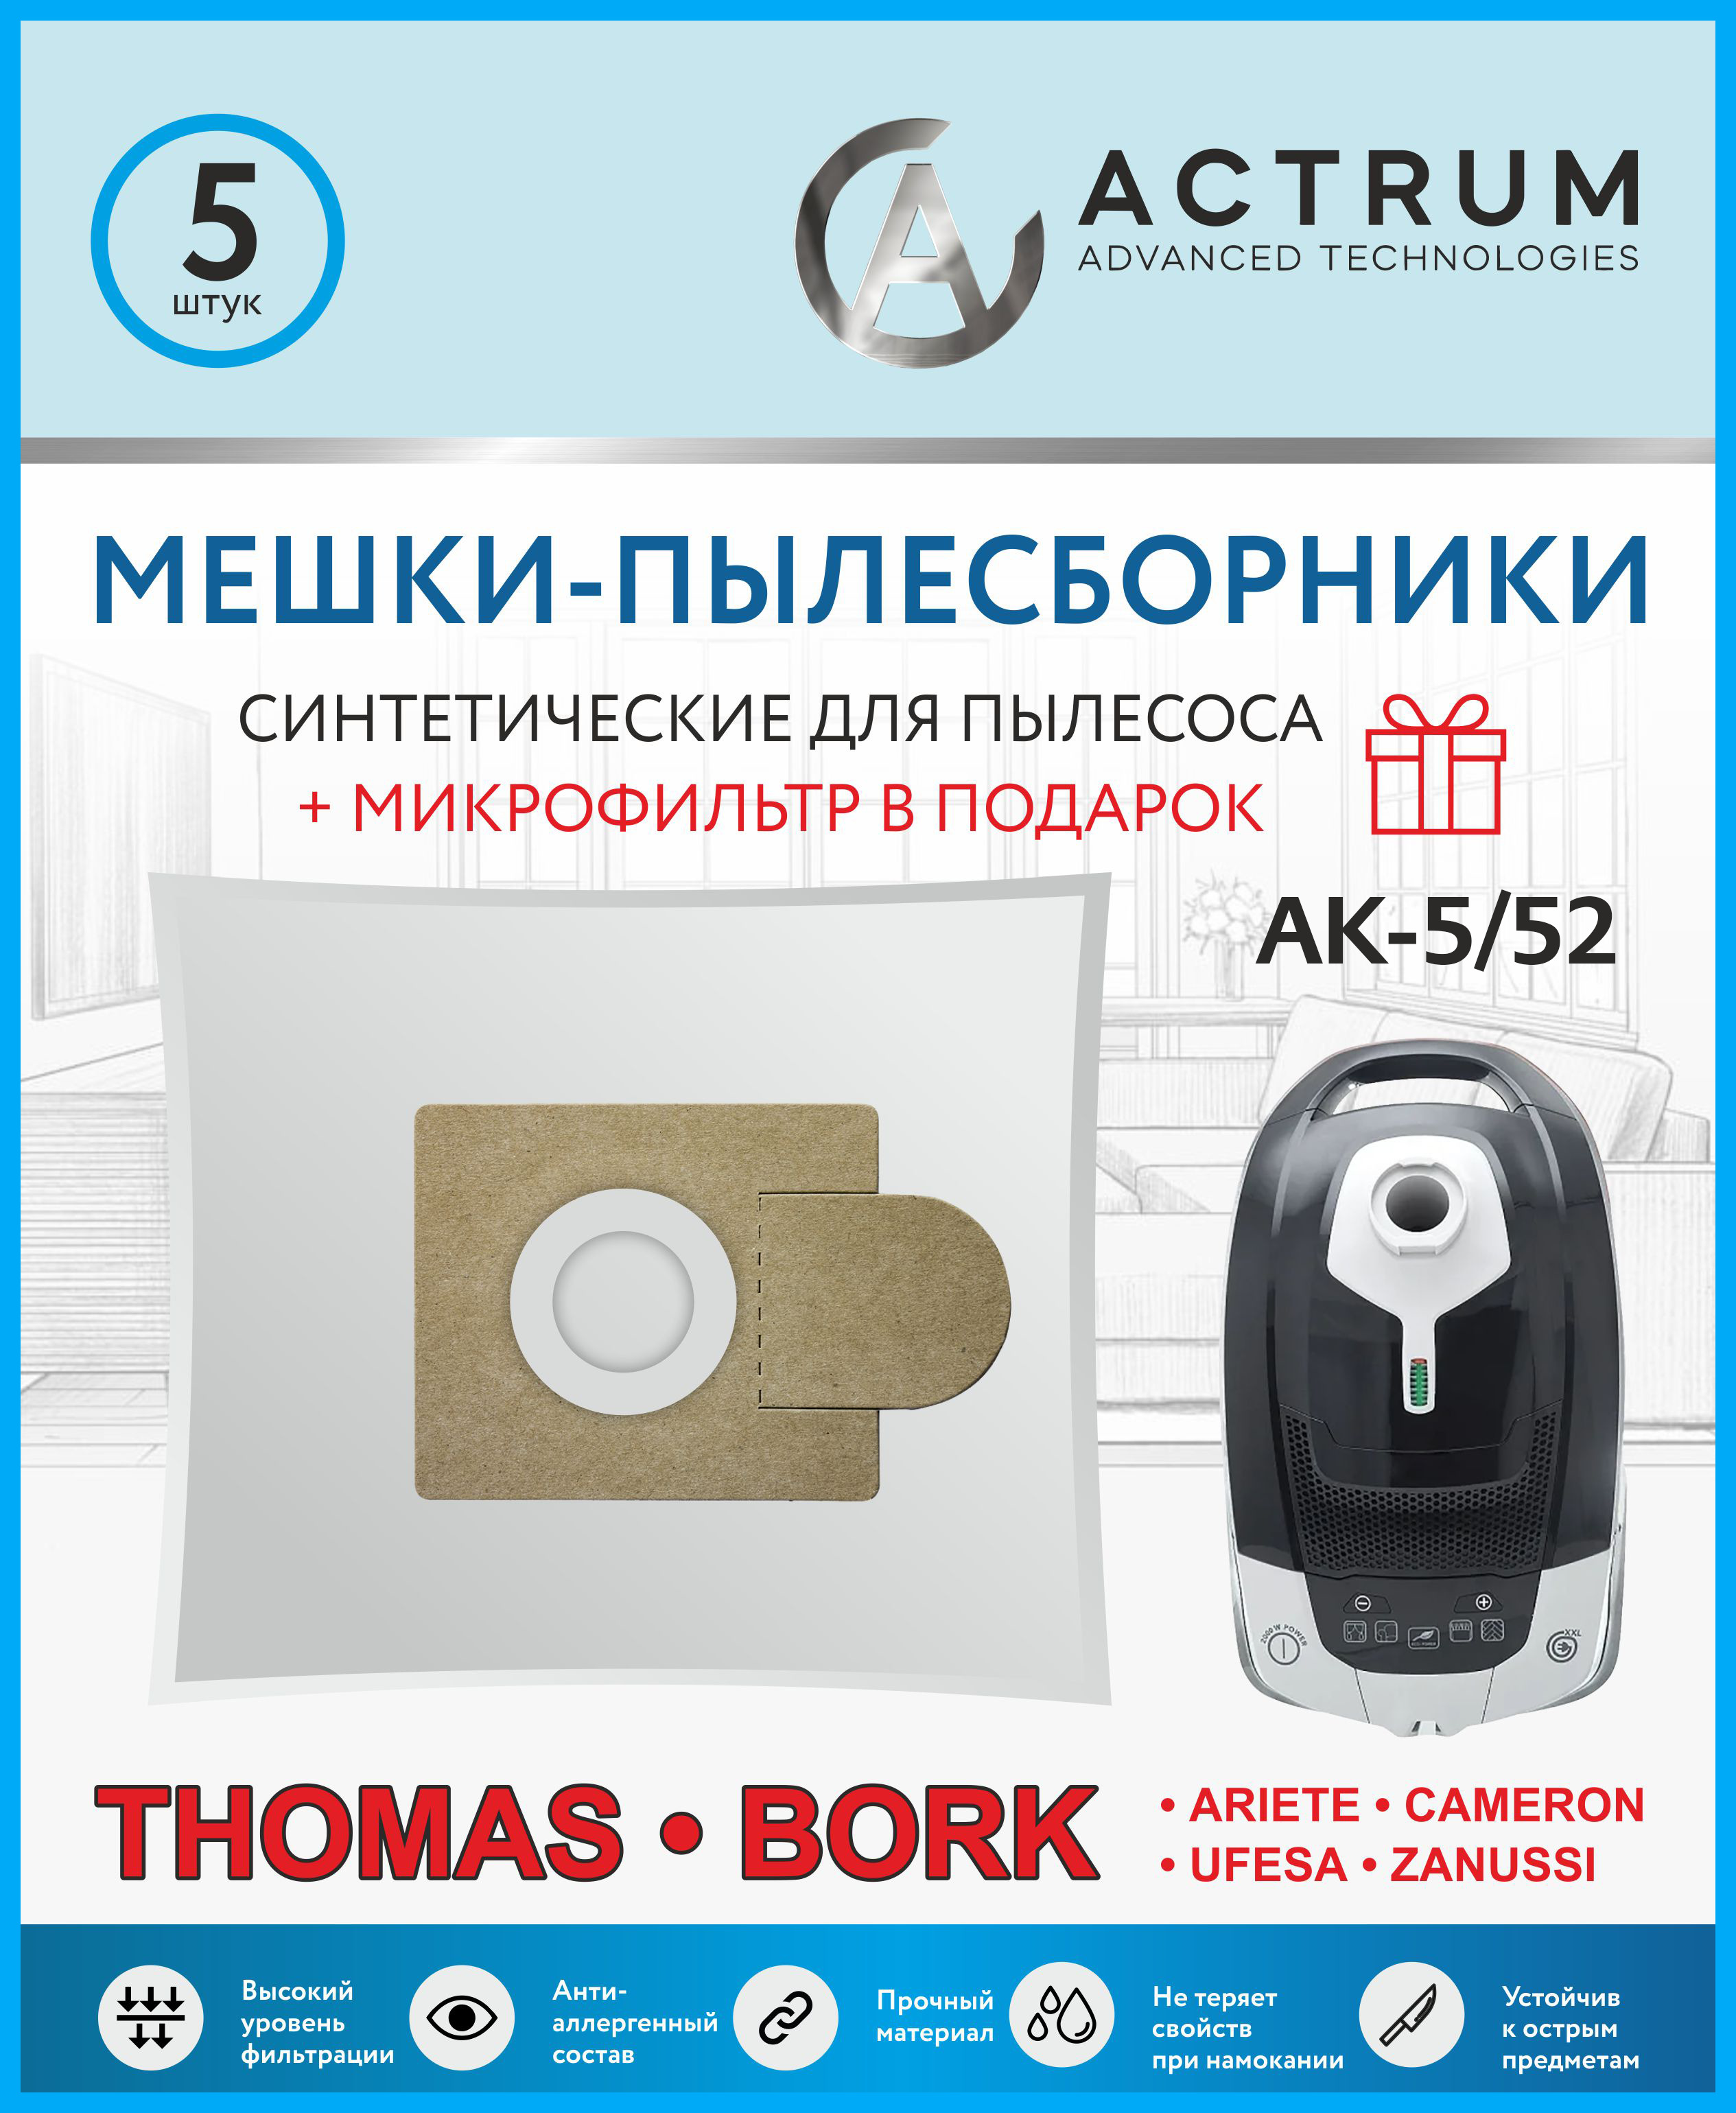 Пылесборник ACTRUM AK-5/52 комплект пылесборников для clatronic evgo lg polar scarlett komforter